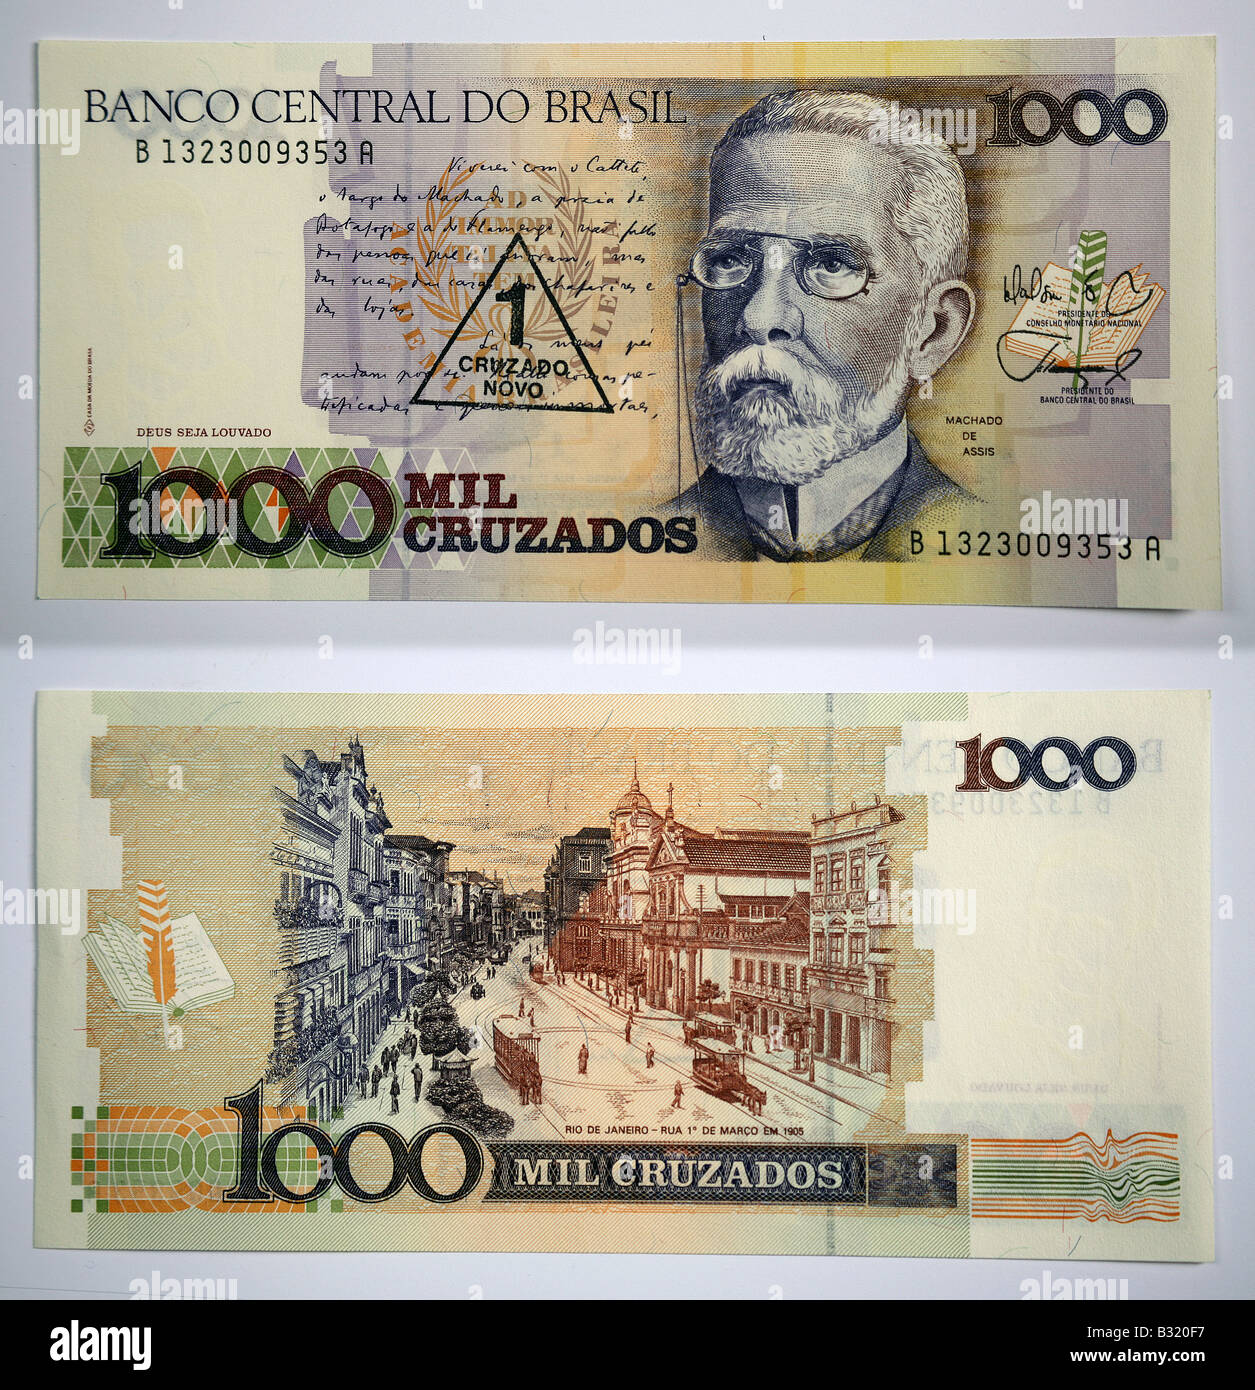 Brazilian Currency 1000 Banco Central Do Brasil Stock Photo